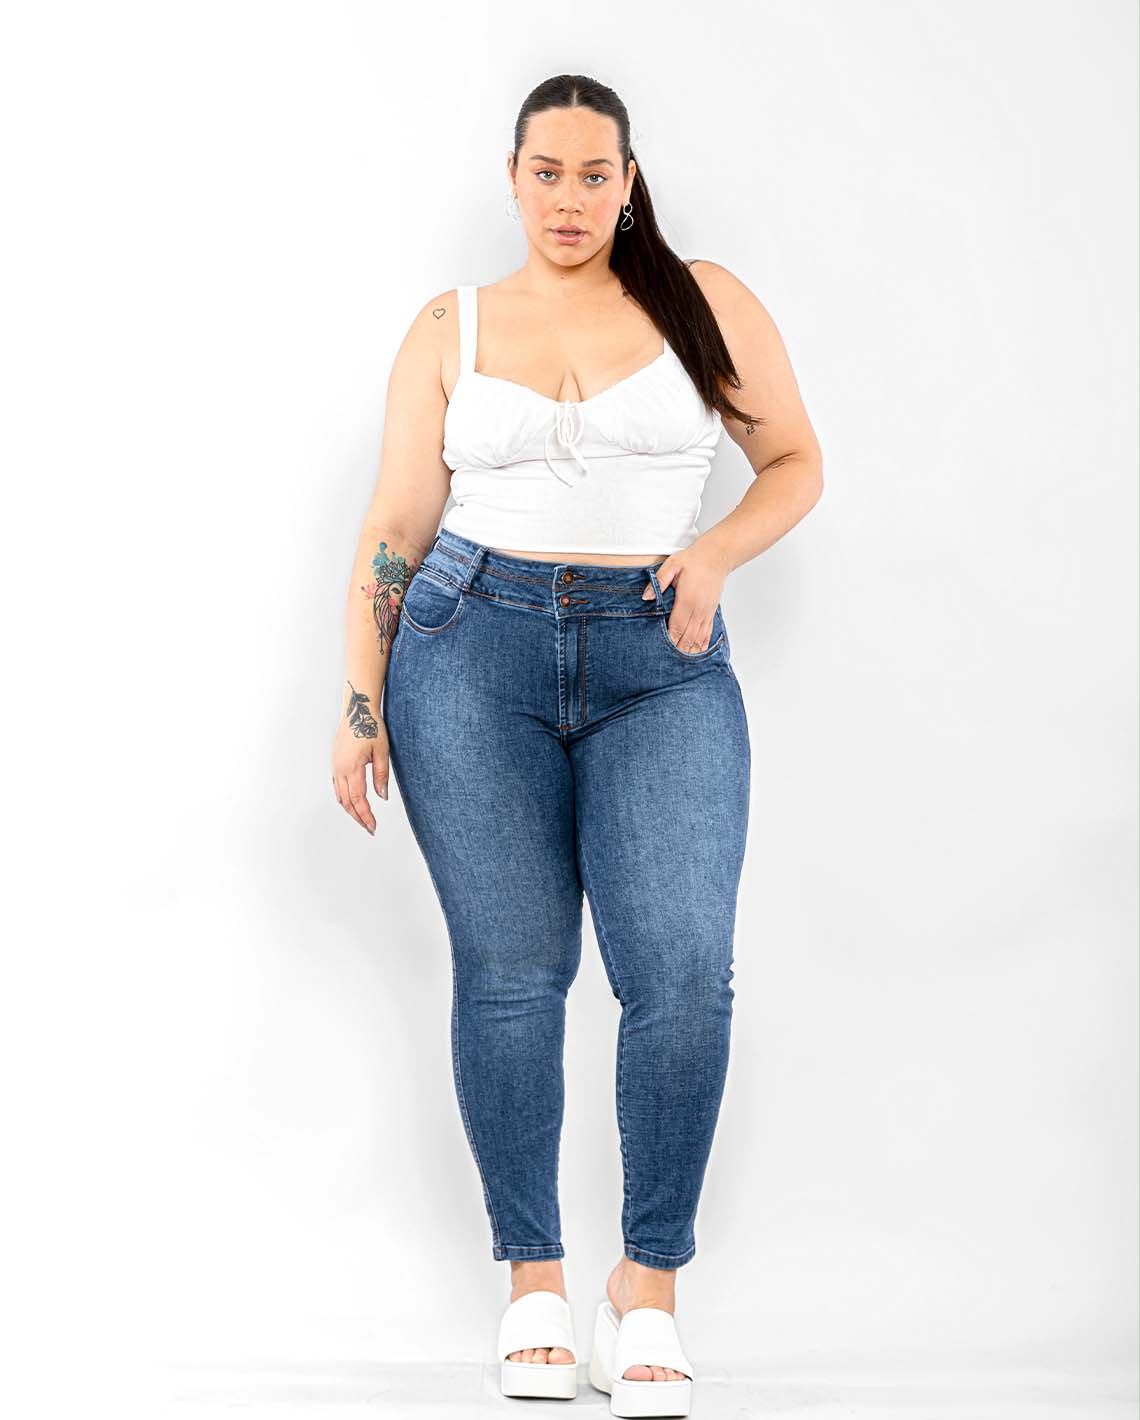 Extreme cut out jeans – GALERIA DE MODA